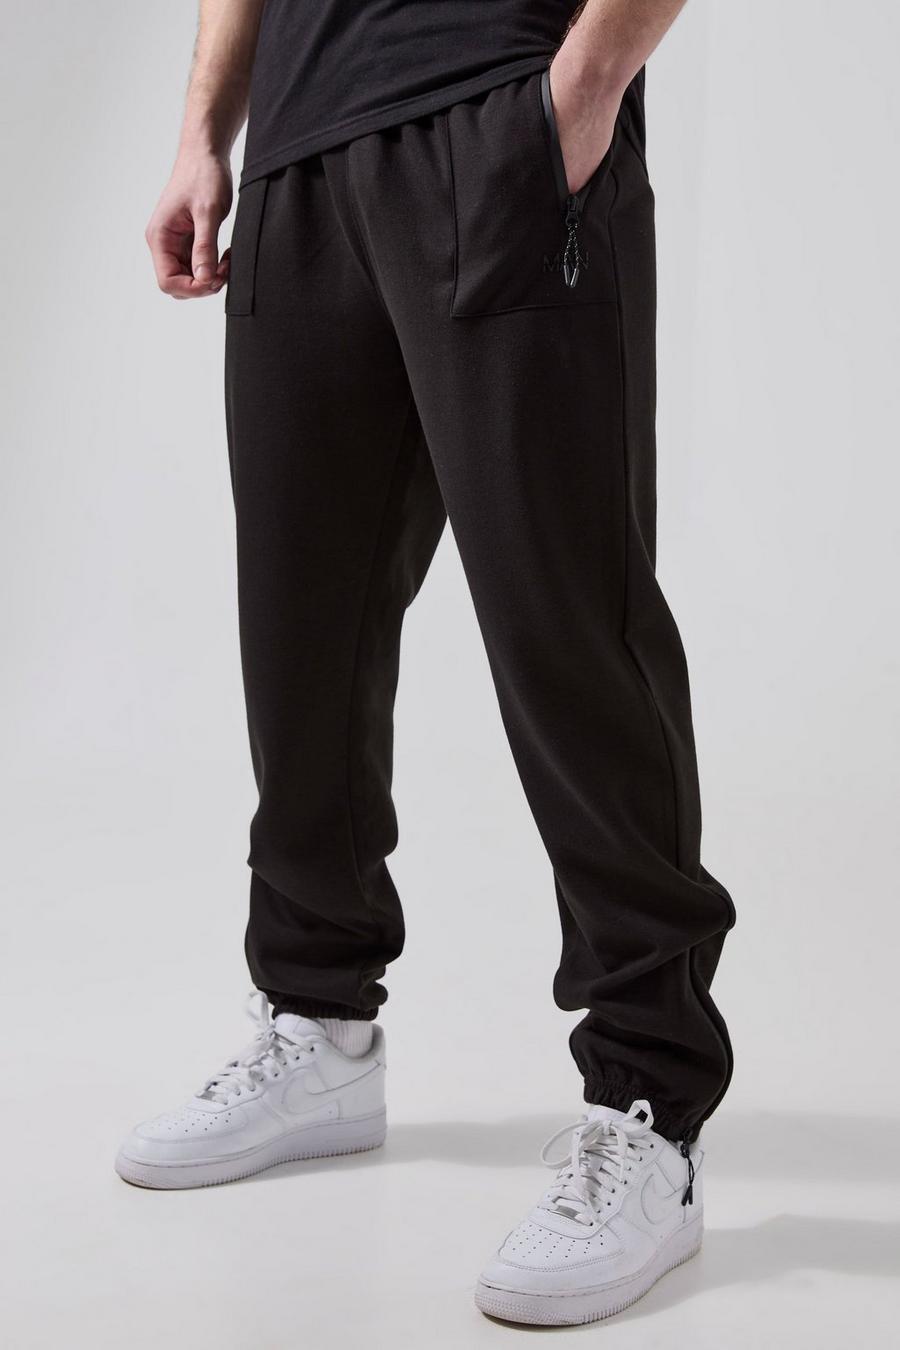 Pantaloni tuta Tall Man Active Tech con zip sul fondo, Black